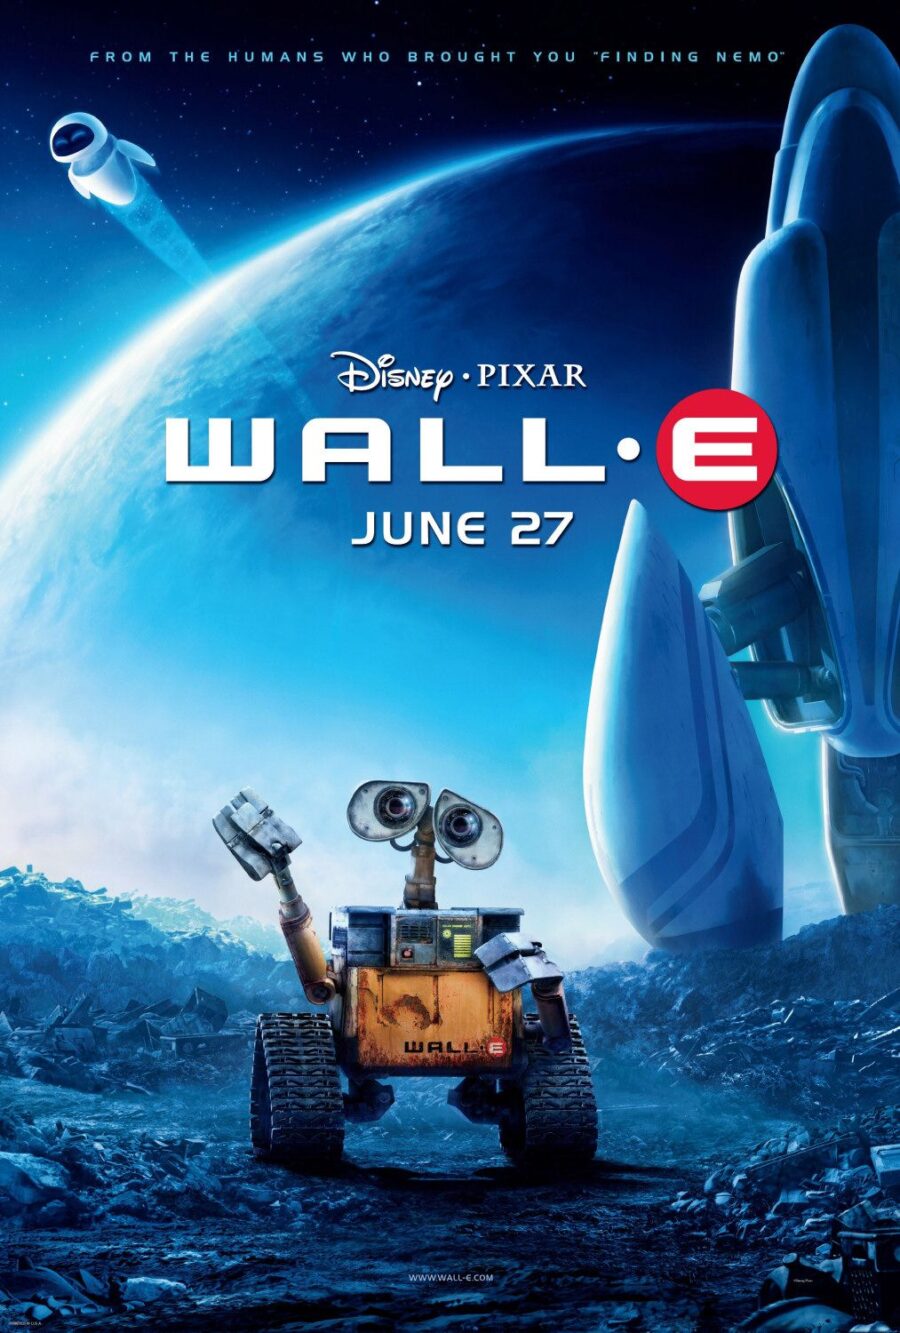 Pixar's best space movie